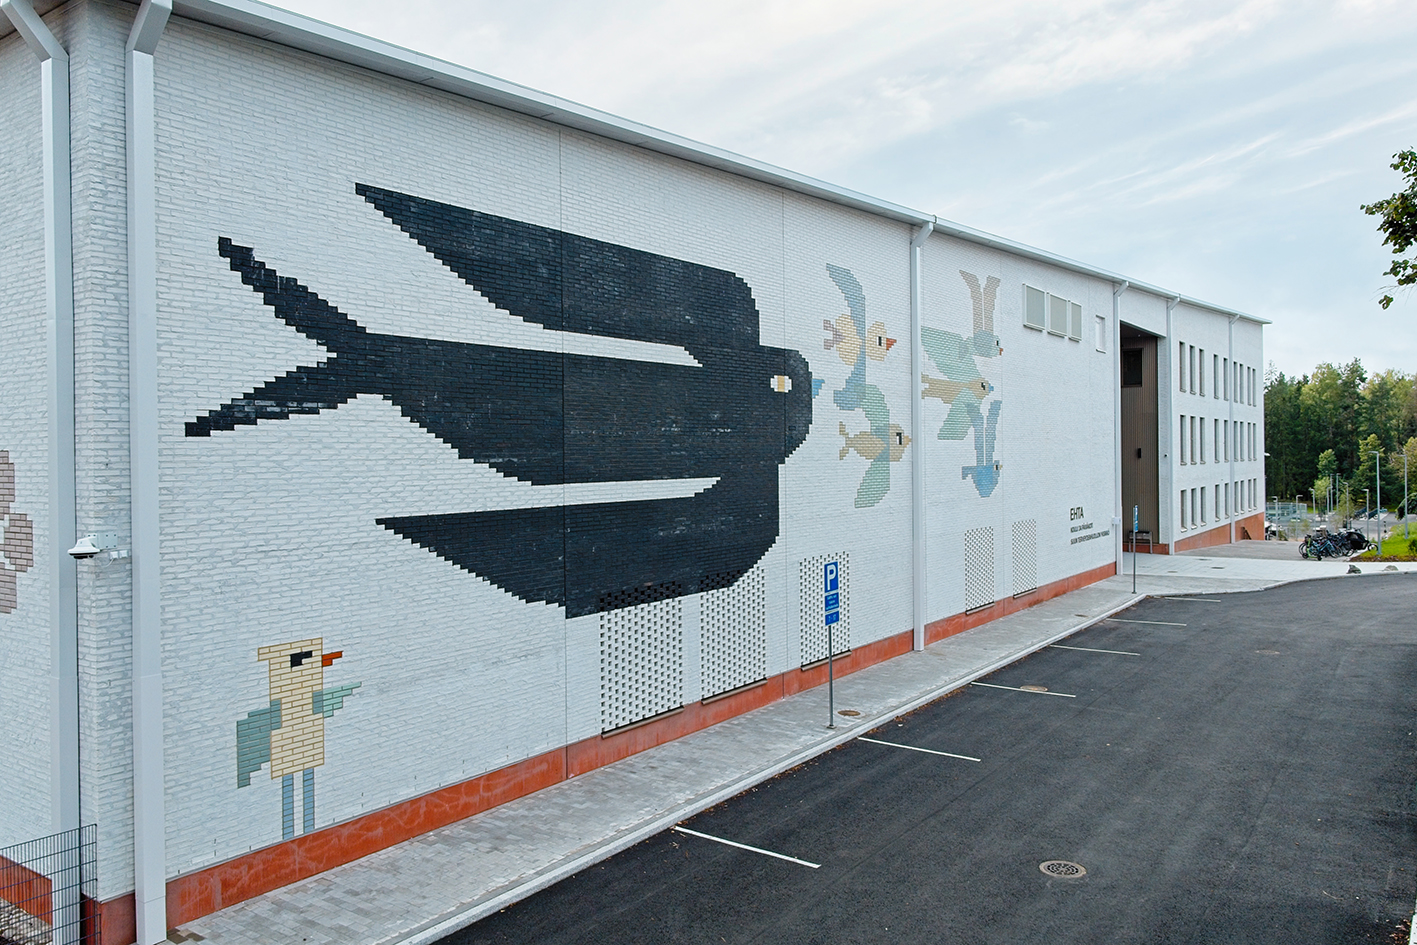 Rakennuksen tiiliverhoiluun on toteutettu taidetta, jossa on kuva isosta mustasta linnusta ja pienemmistä vaaleansävyisistä linnuista.